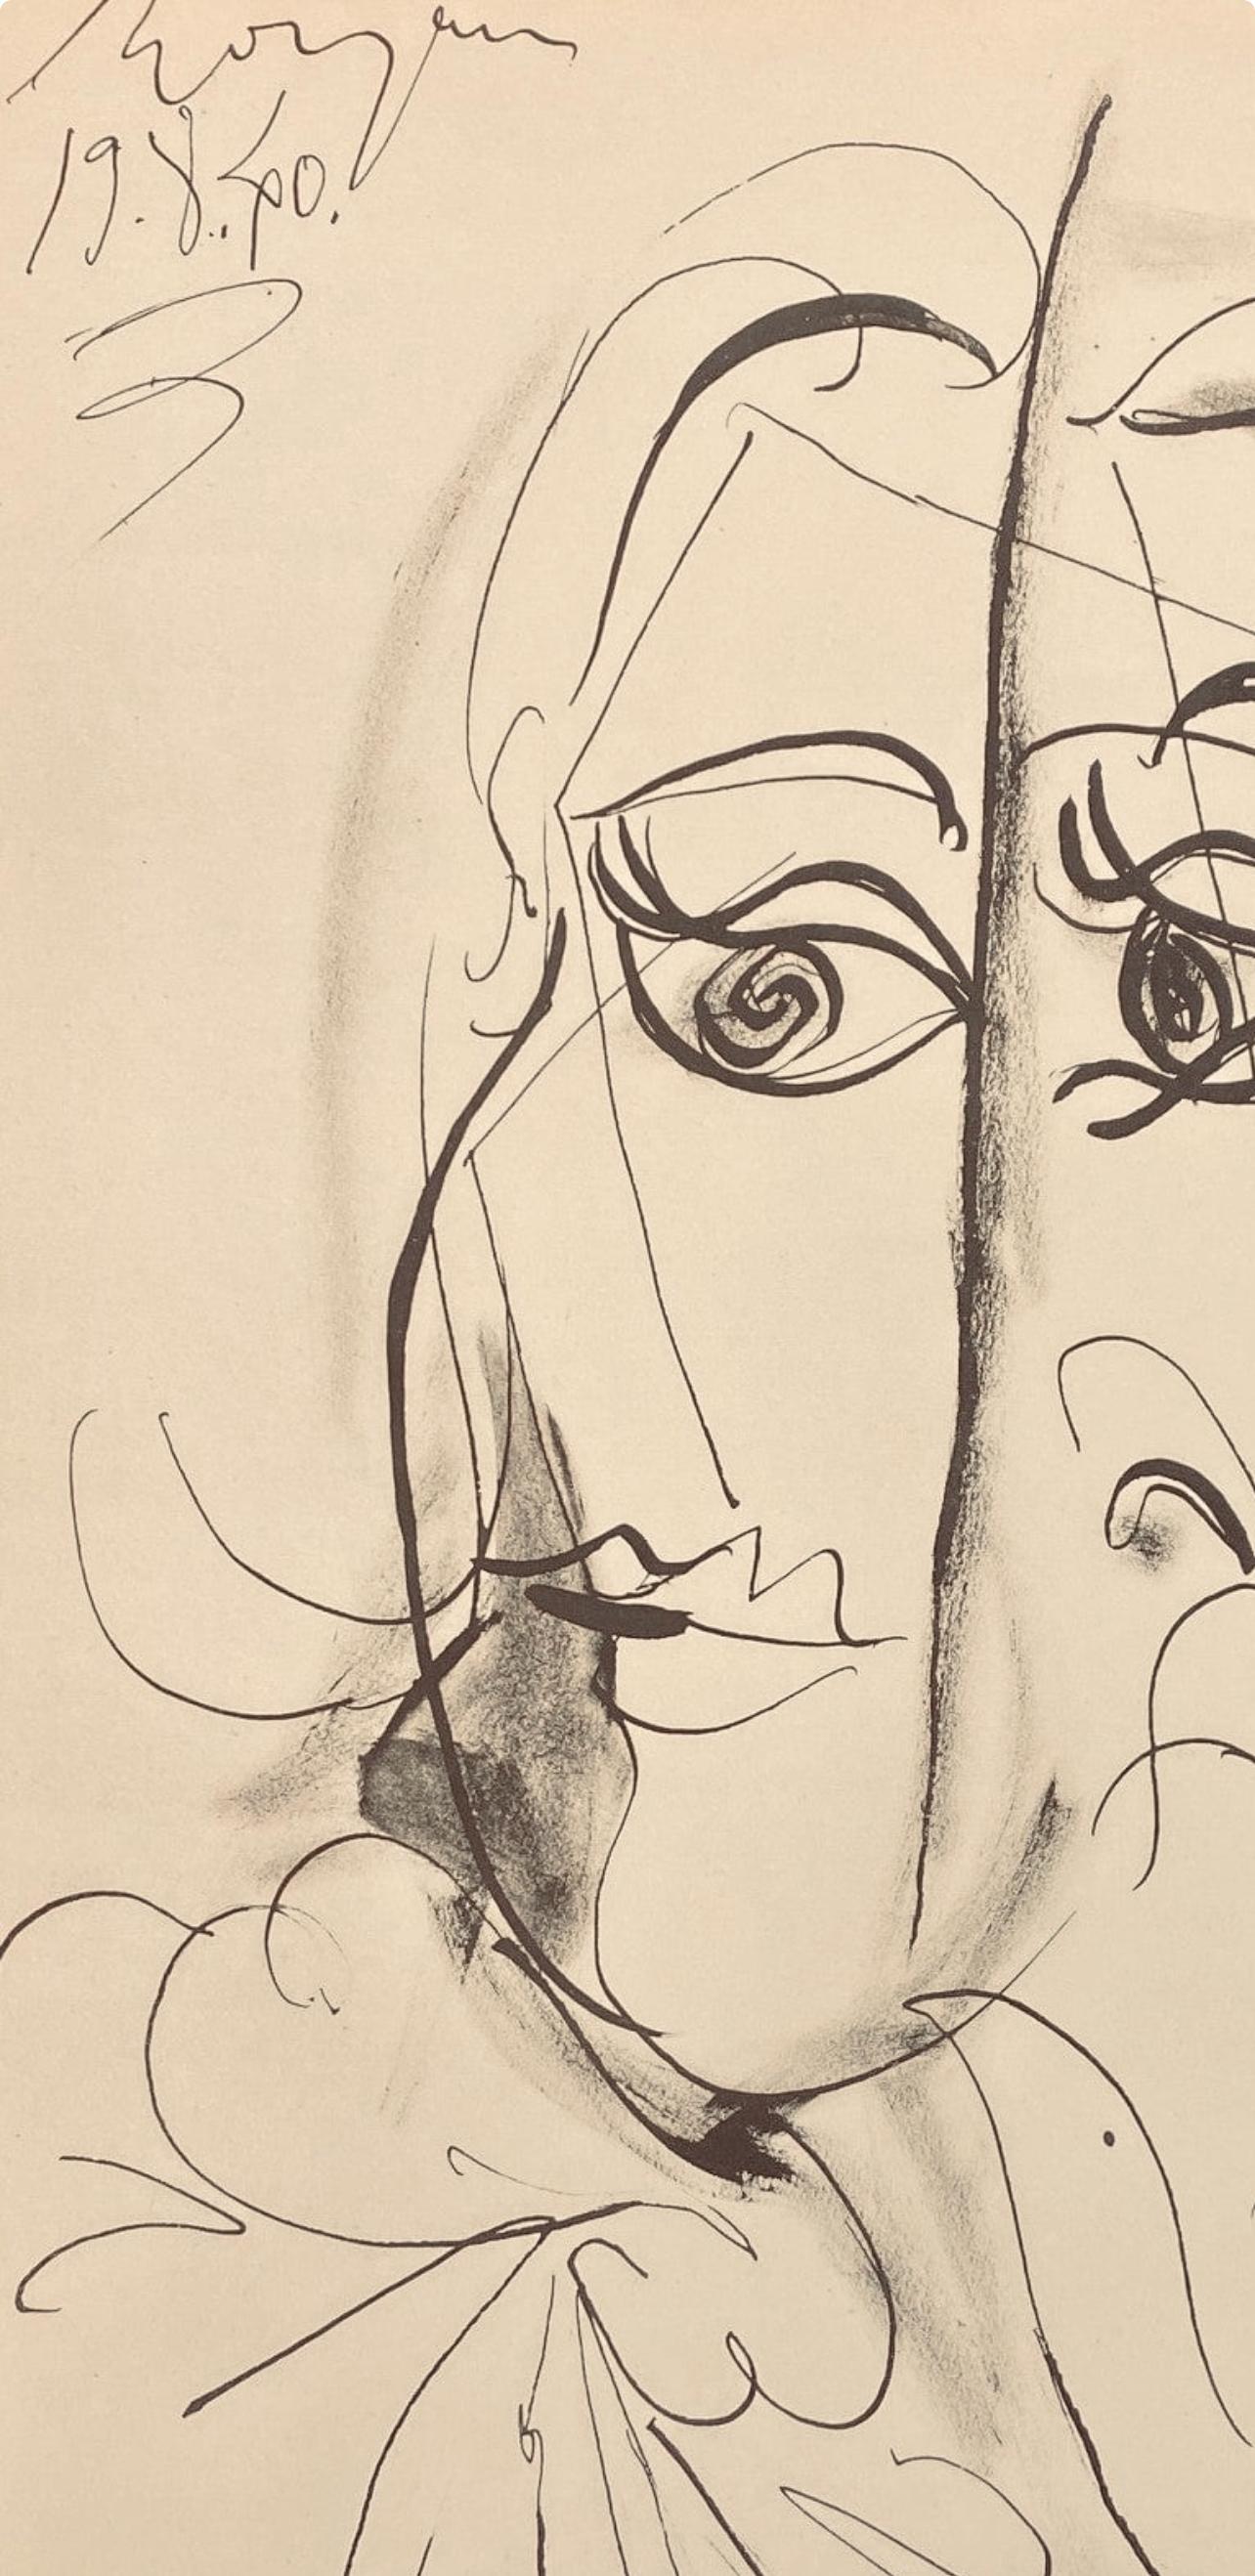 Picasso, Composition, Carnet de dessins de Picasso, Cahiers d’Art (after) - Cubist Print by Pablo Picasso